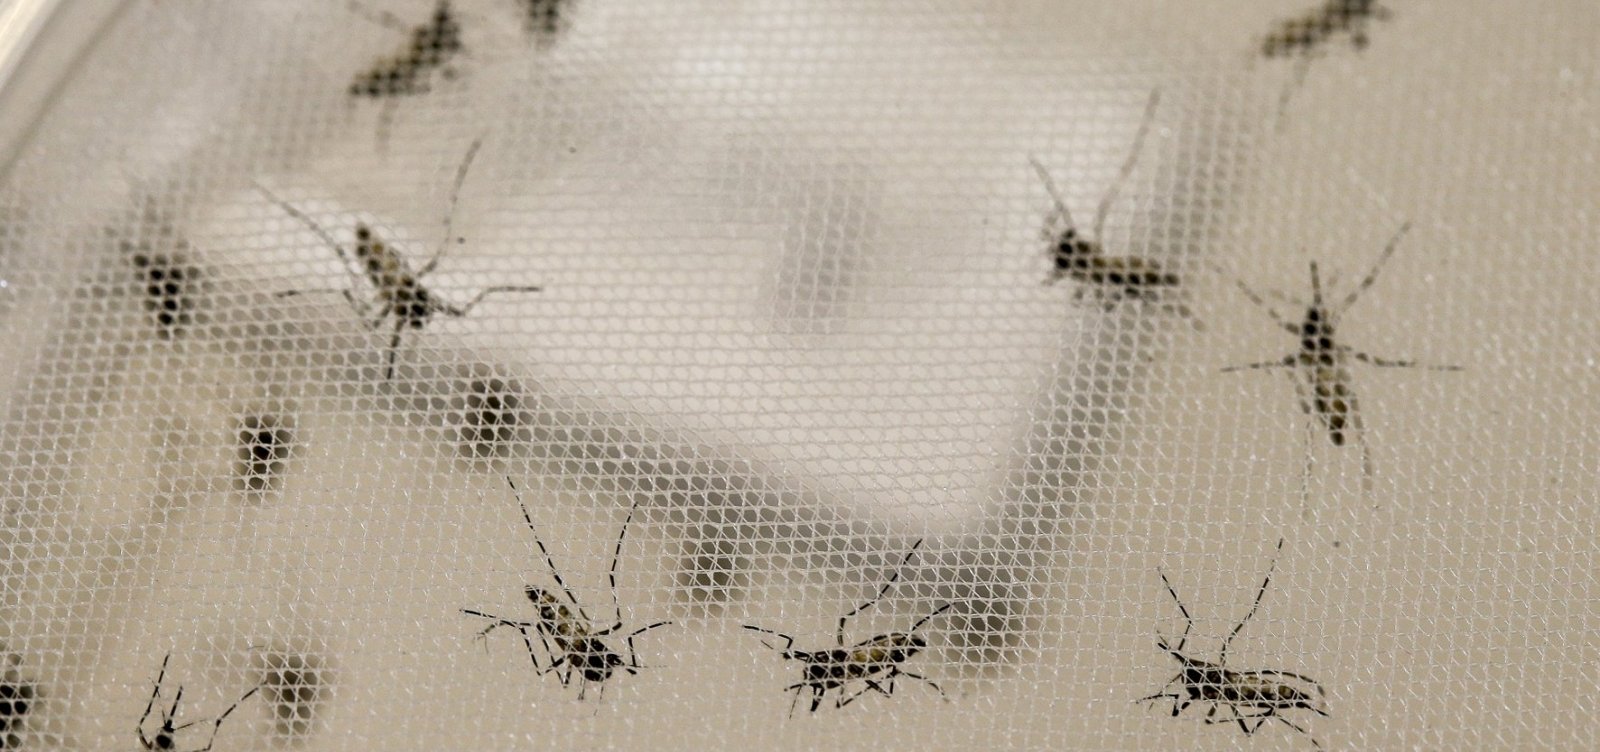 Epidemia de dengue já atinge 354 municípios baianos em 2019